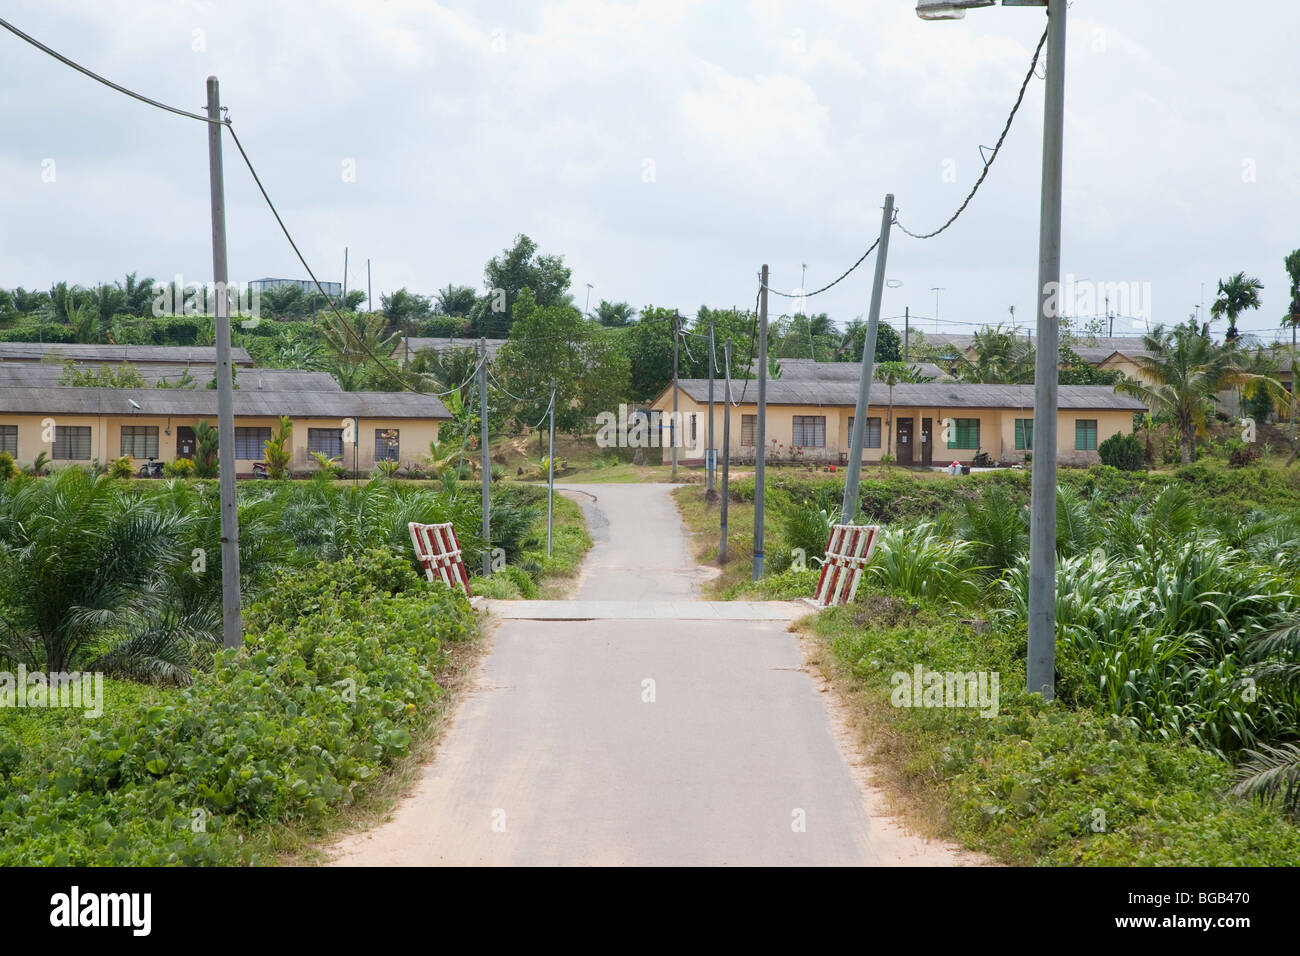 Circa la metà delle persone che lavorano sul Sindora Palm Oil Plantation anche vivere lì in alloggiamento fornito (nella foto). Foto Stock